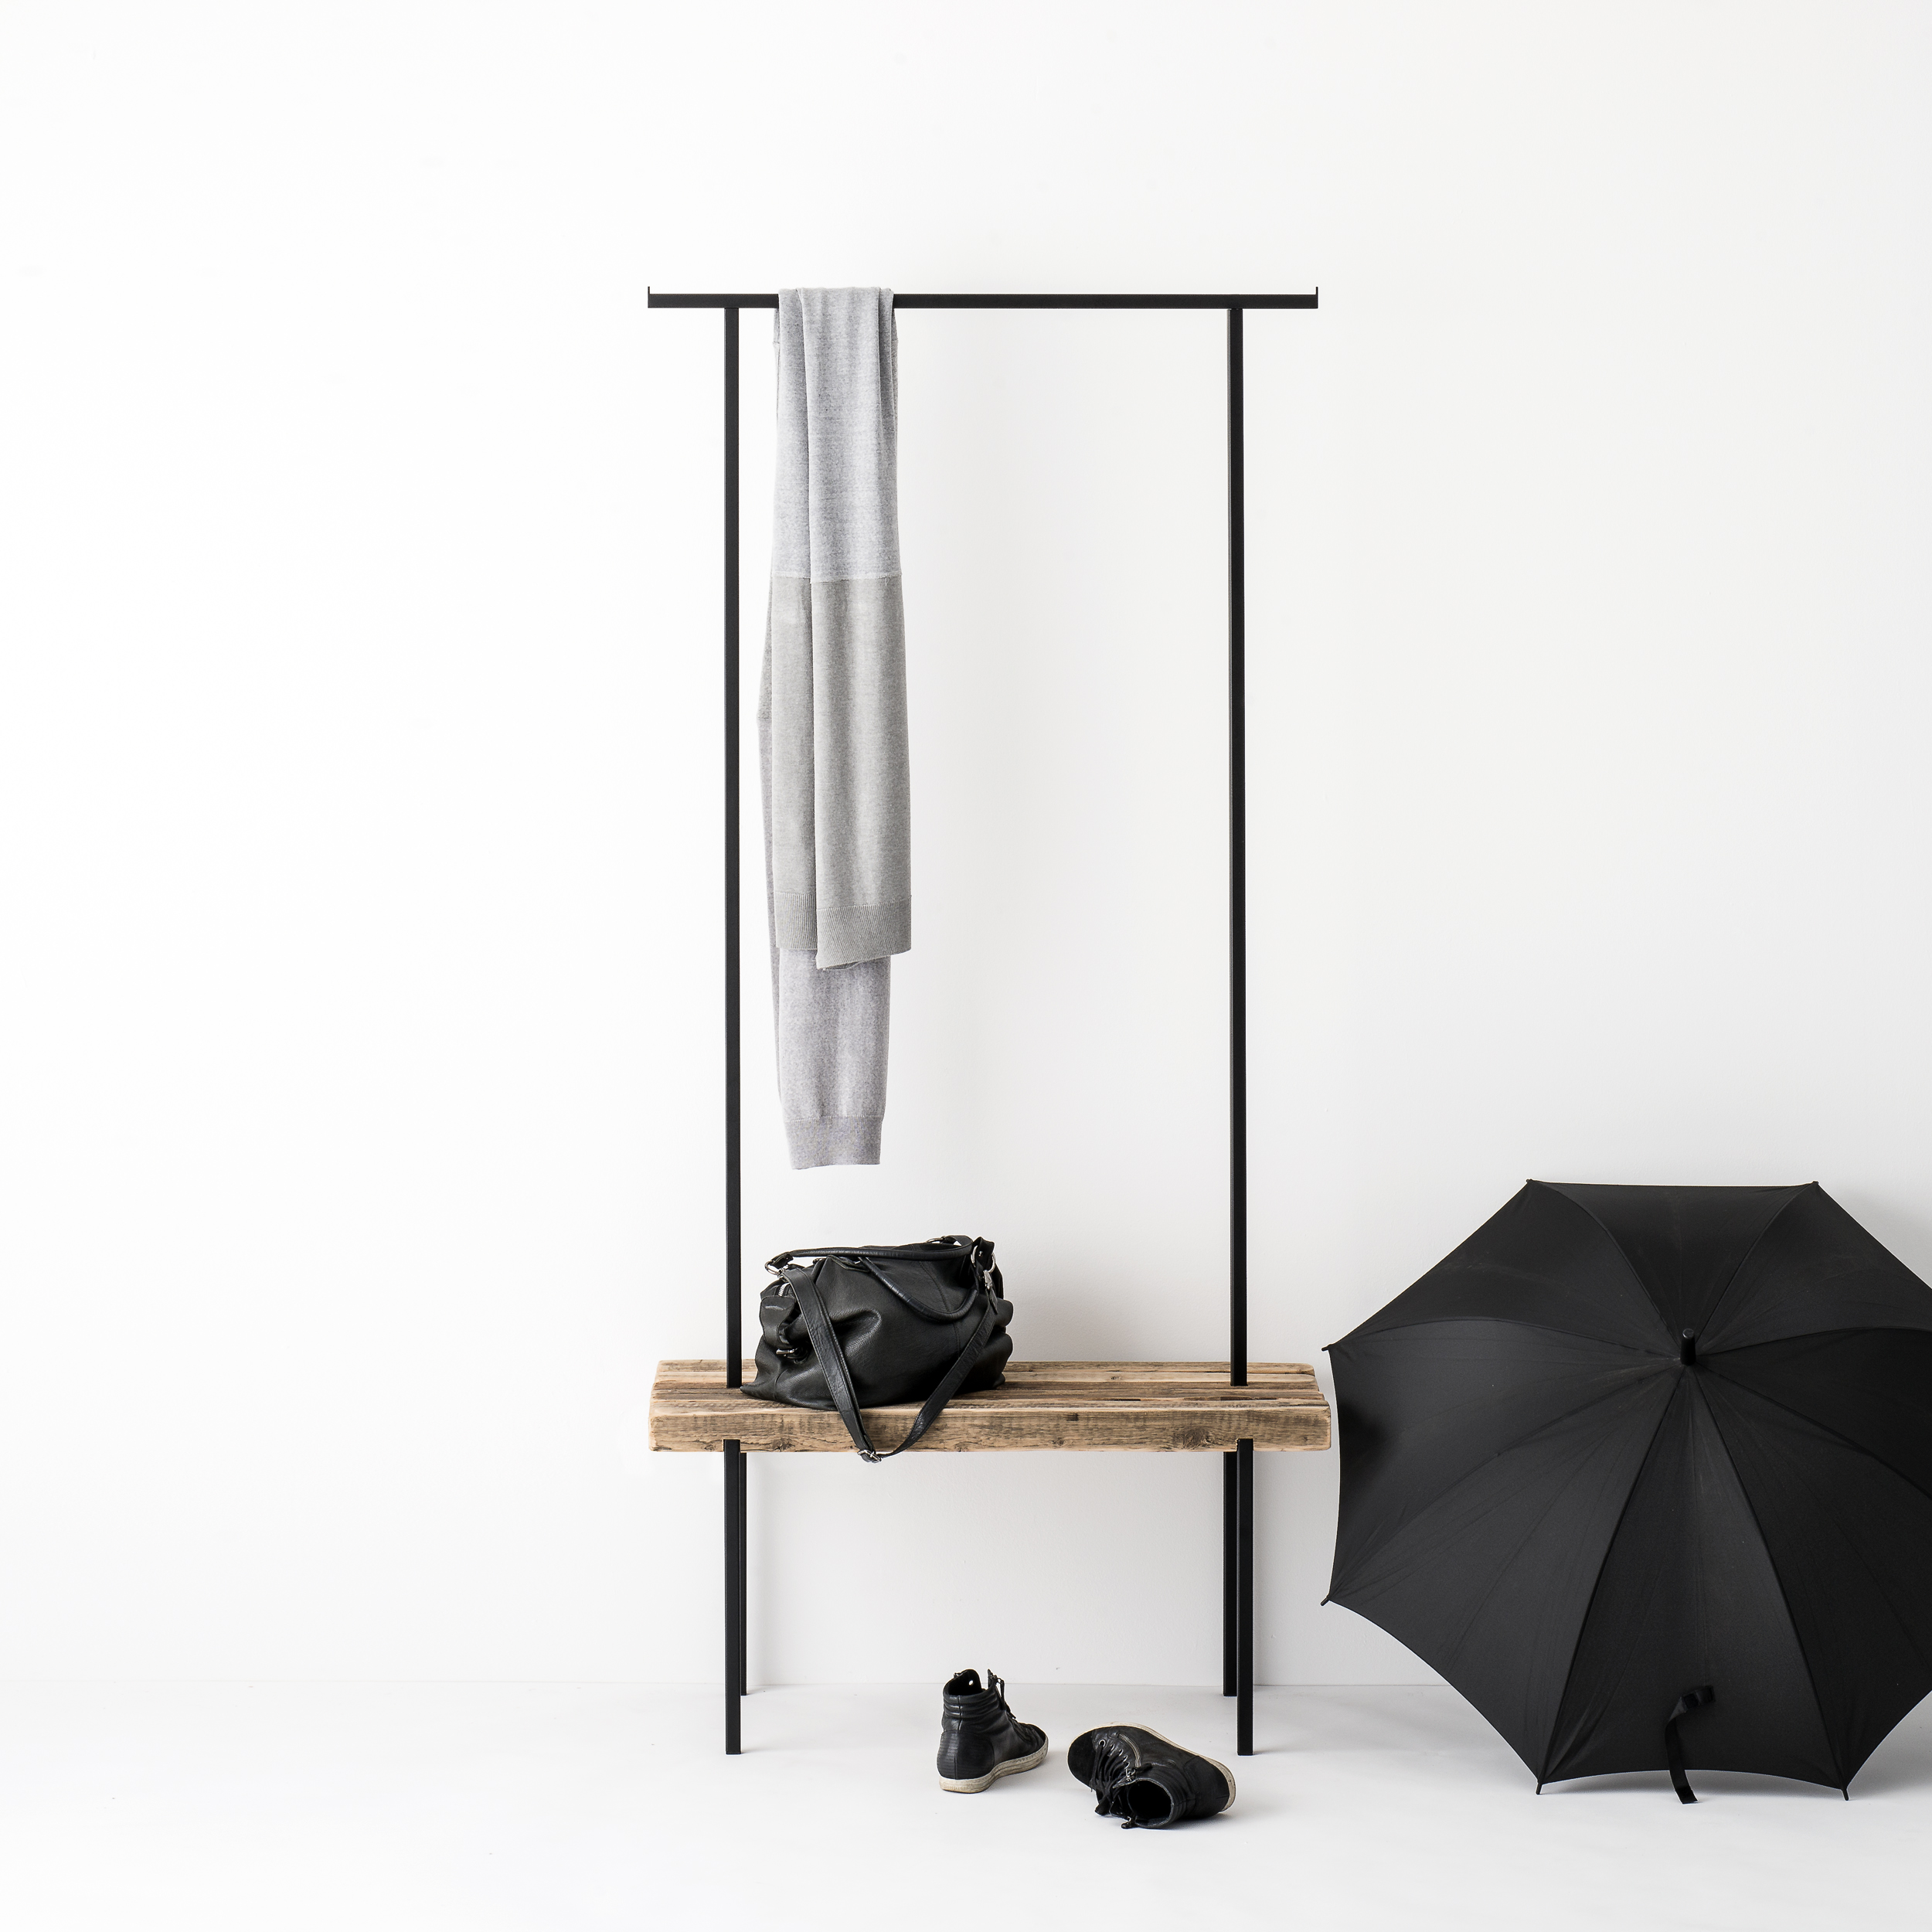 Garderobe Altholz 01 von weld & co in Größe S, inszeniert mit grauem Schal, schwarzer Handtasche, schwarzen Schuhen und schwarzem Regenschirm.